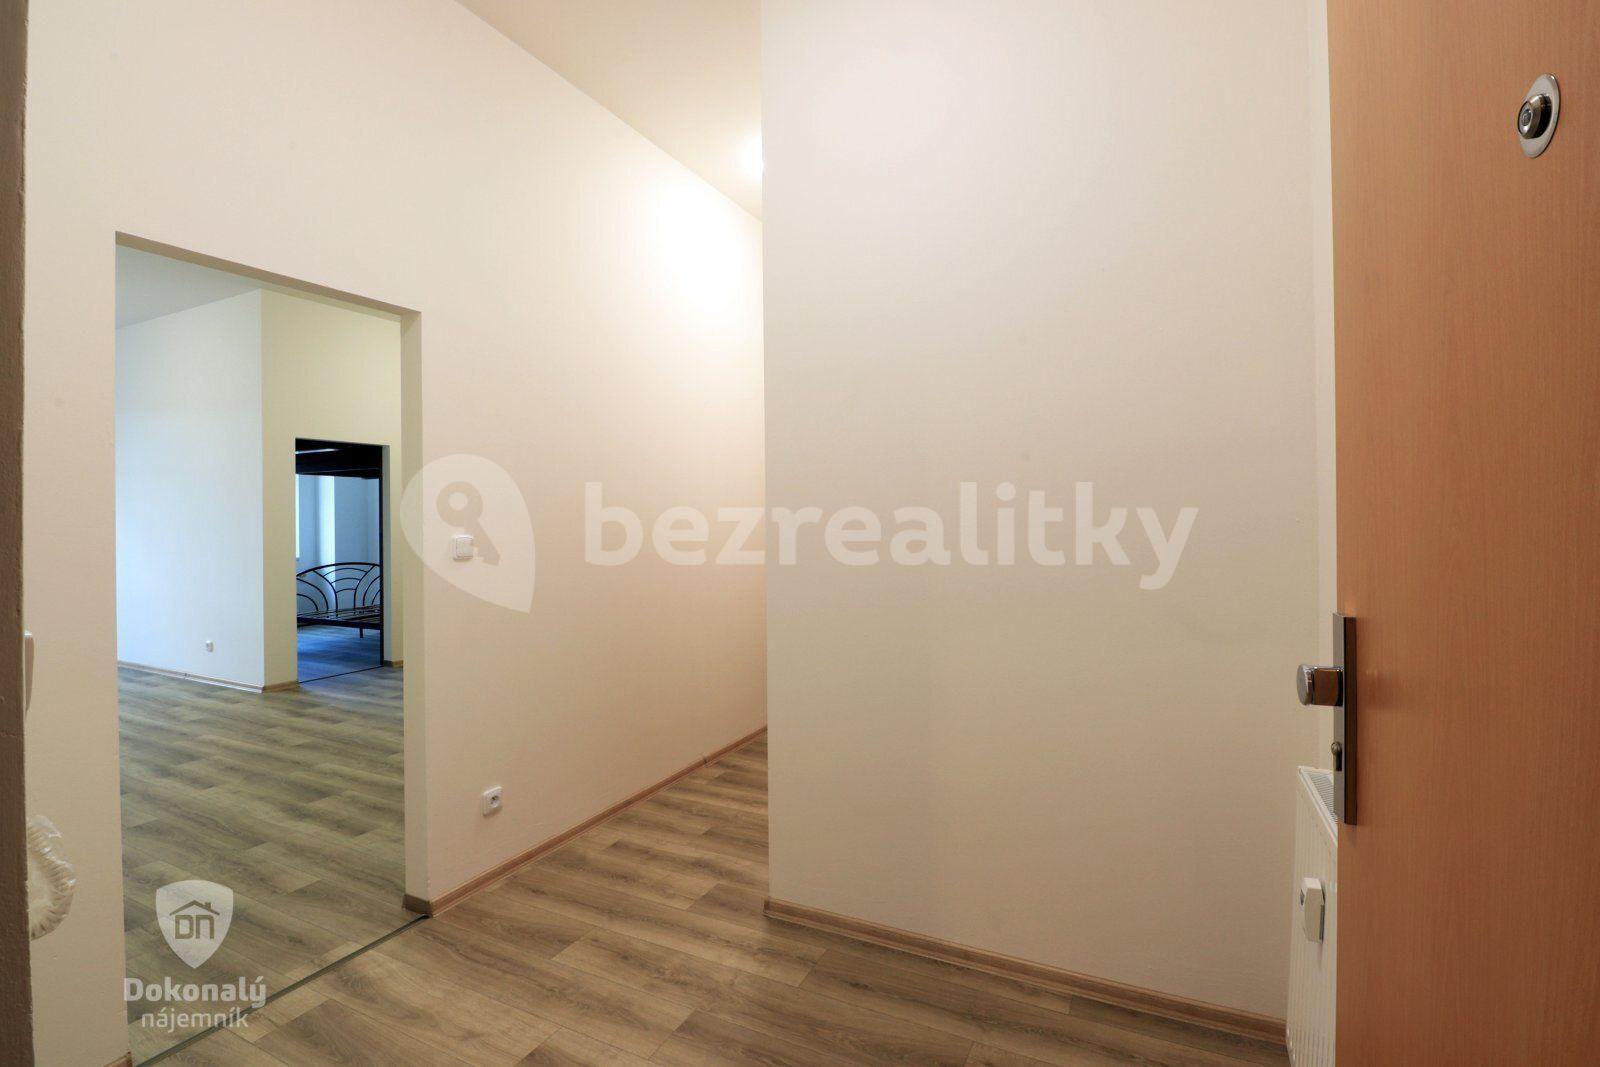 1 bedroom with open-plan kitchen flat to rent, 58 m², Topolová, Milovice, Středočeský Region